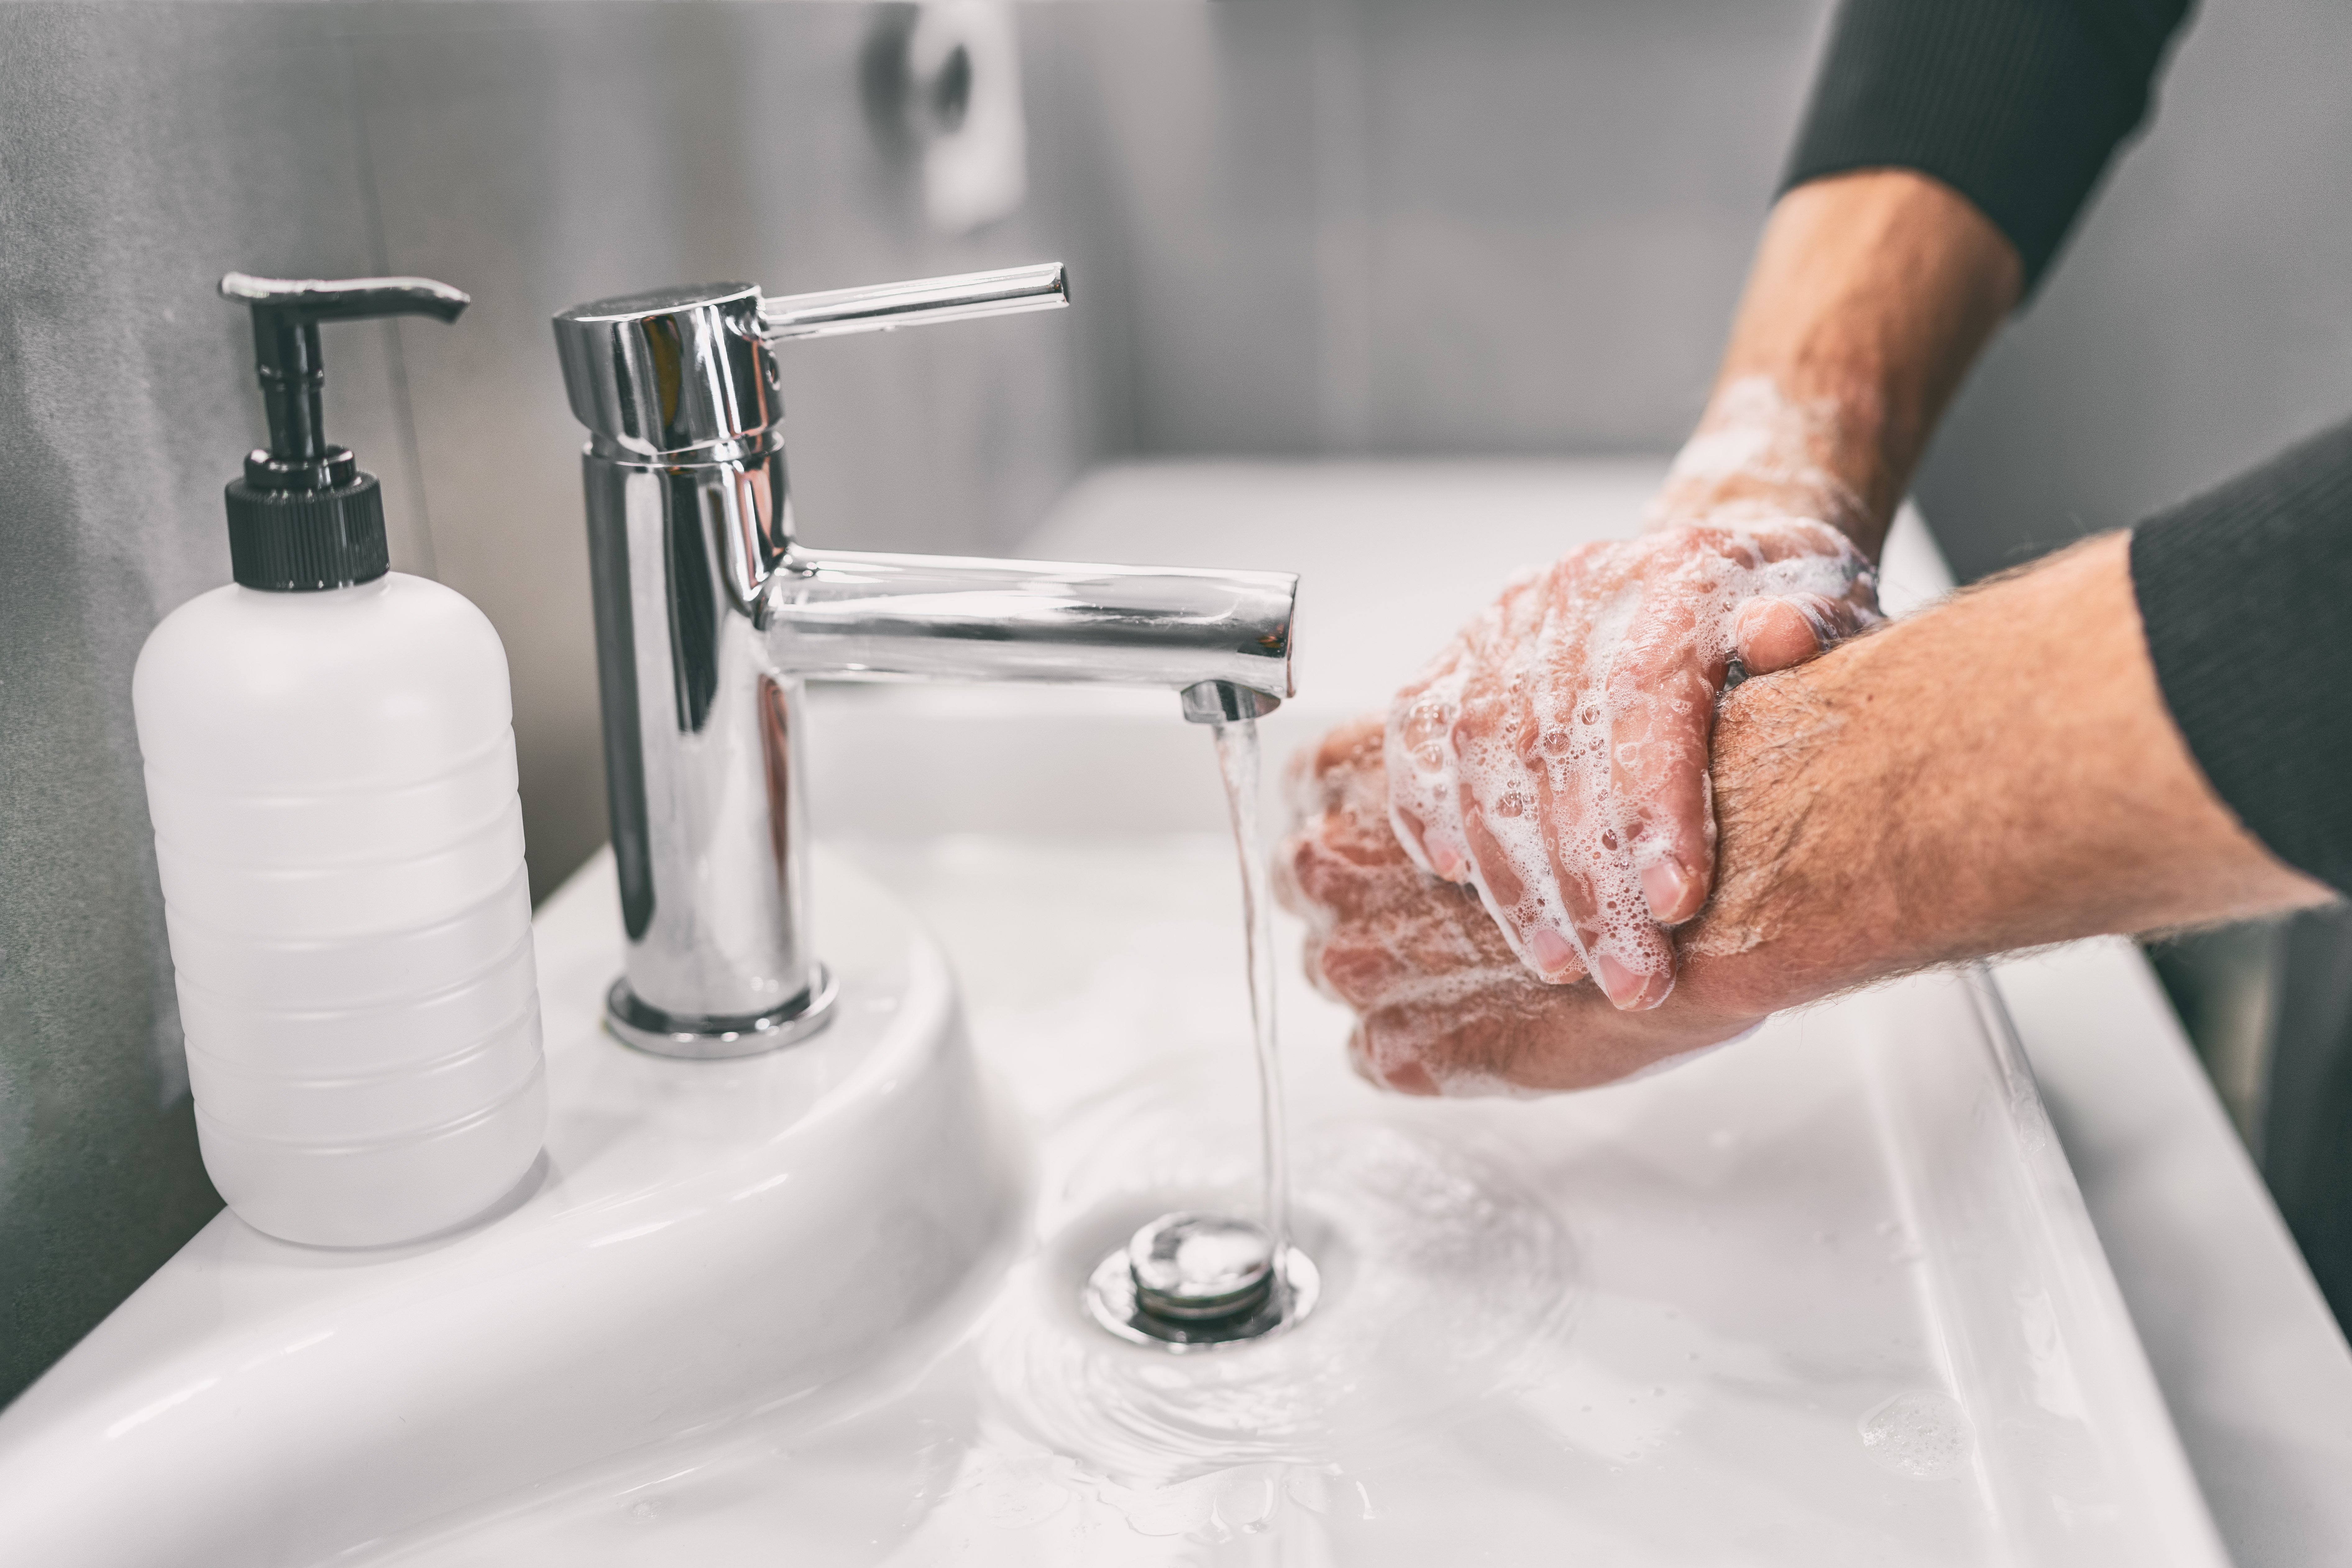 Lavage des mains en illustration. | Photo : Shutterstock